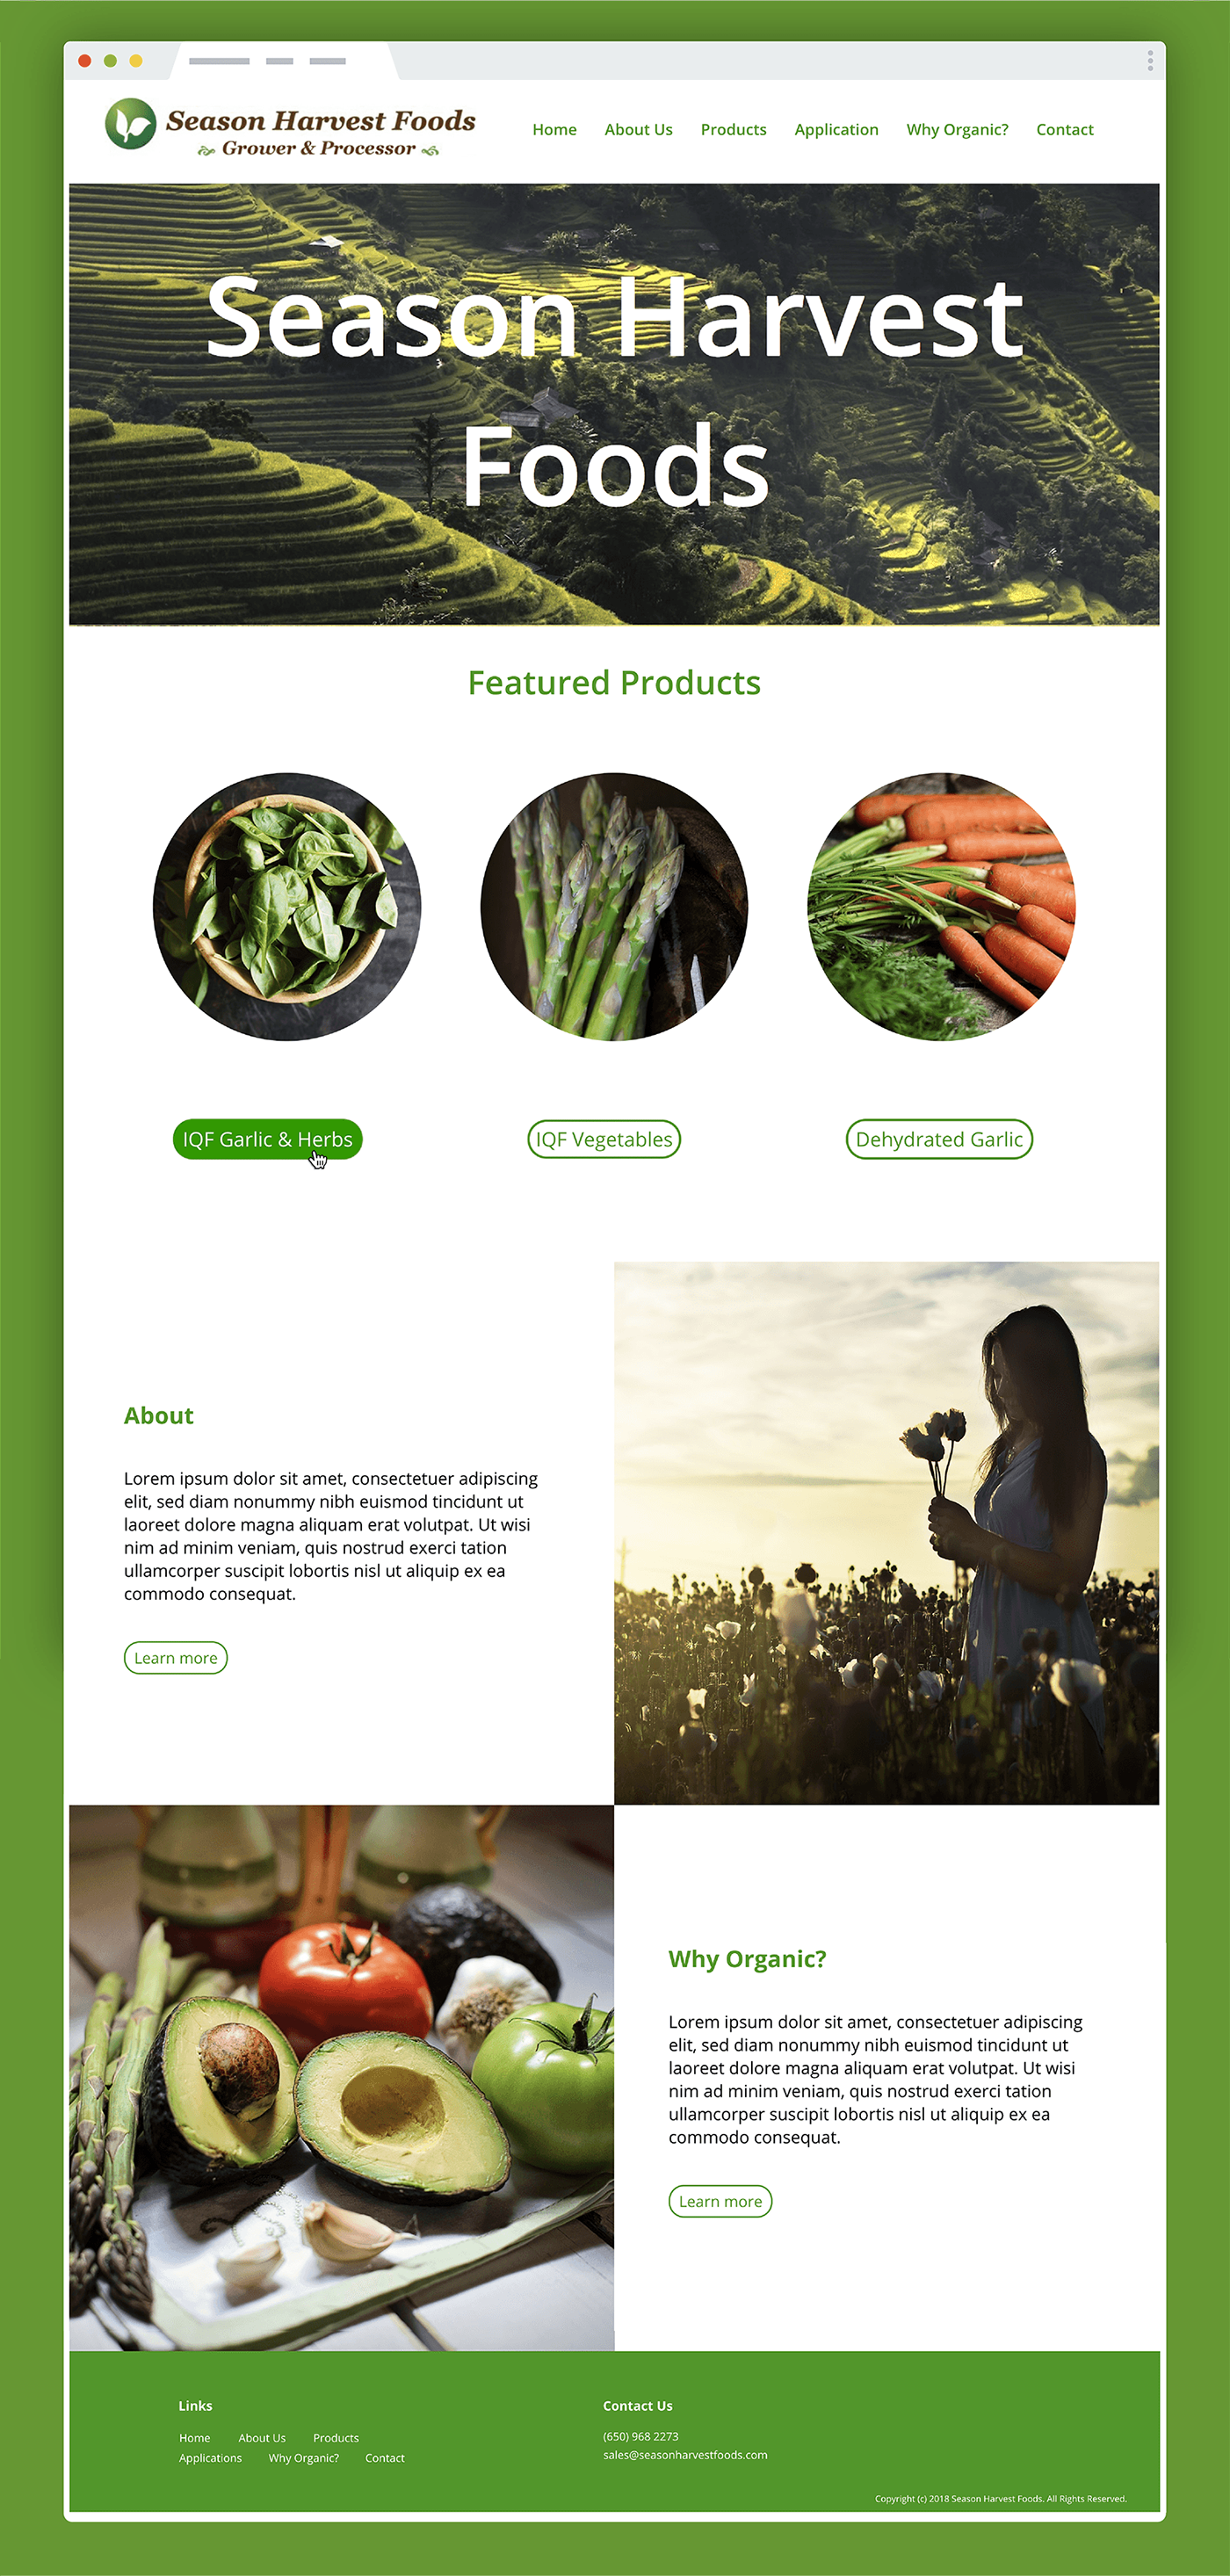 Website organic Food  vegetables season harvest foods